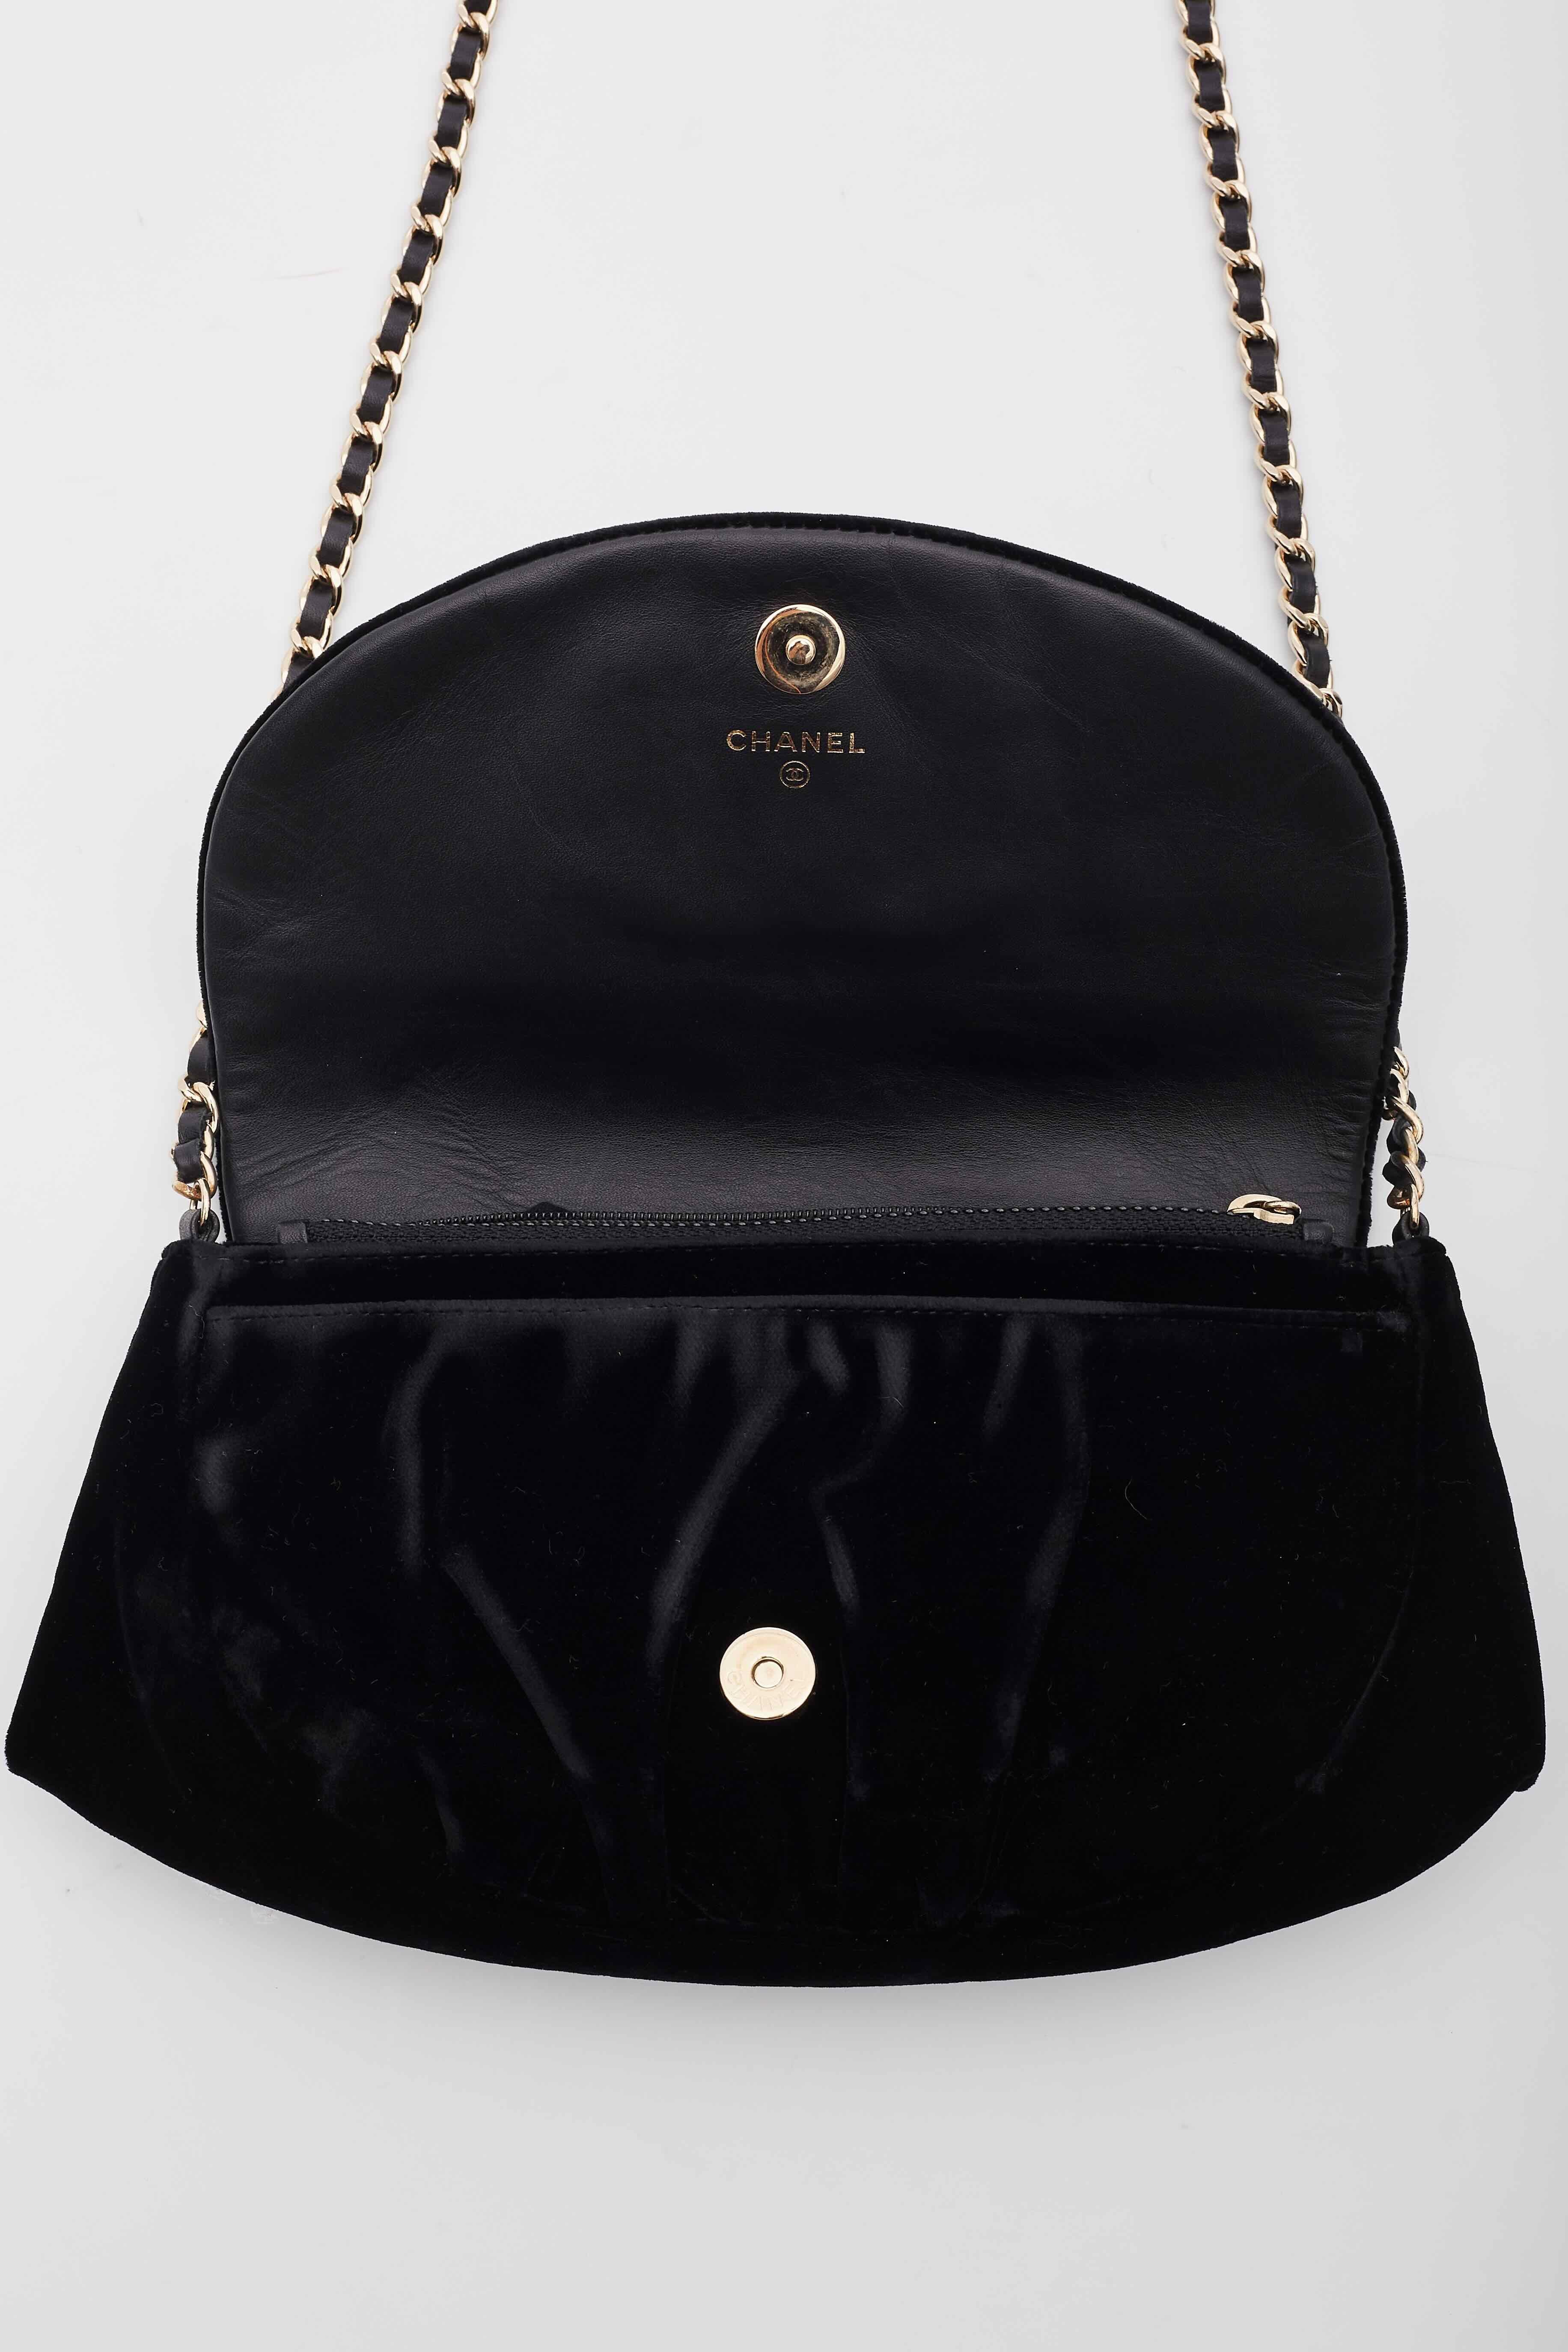 Chanel Velvet Half Moon Black Wallet on Chain Bag For Sale 3